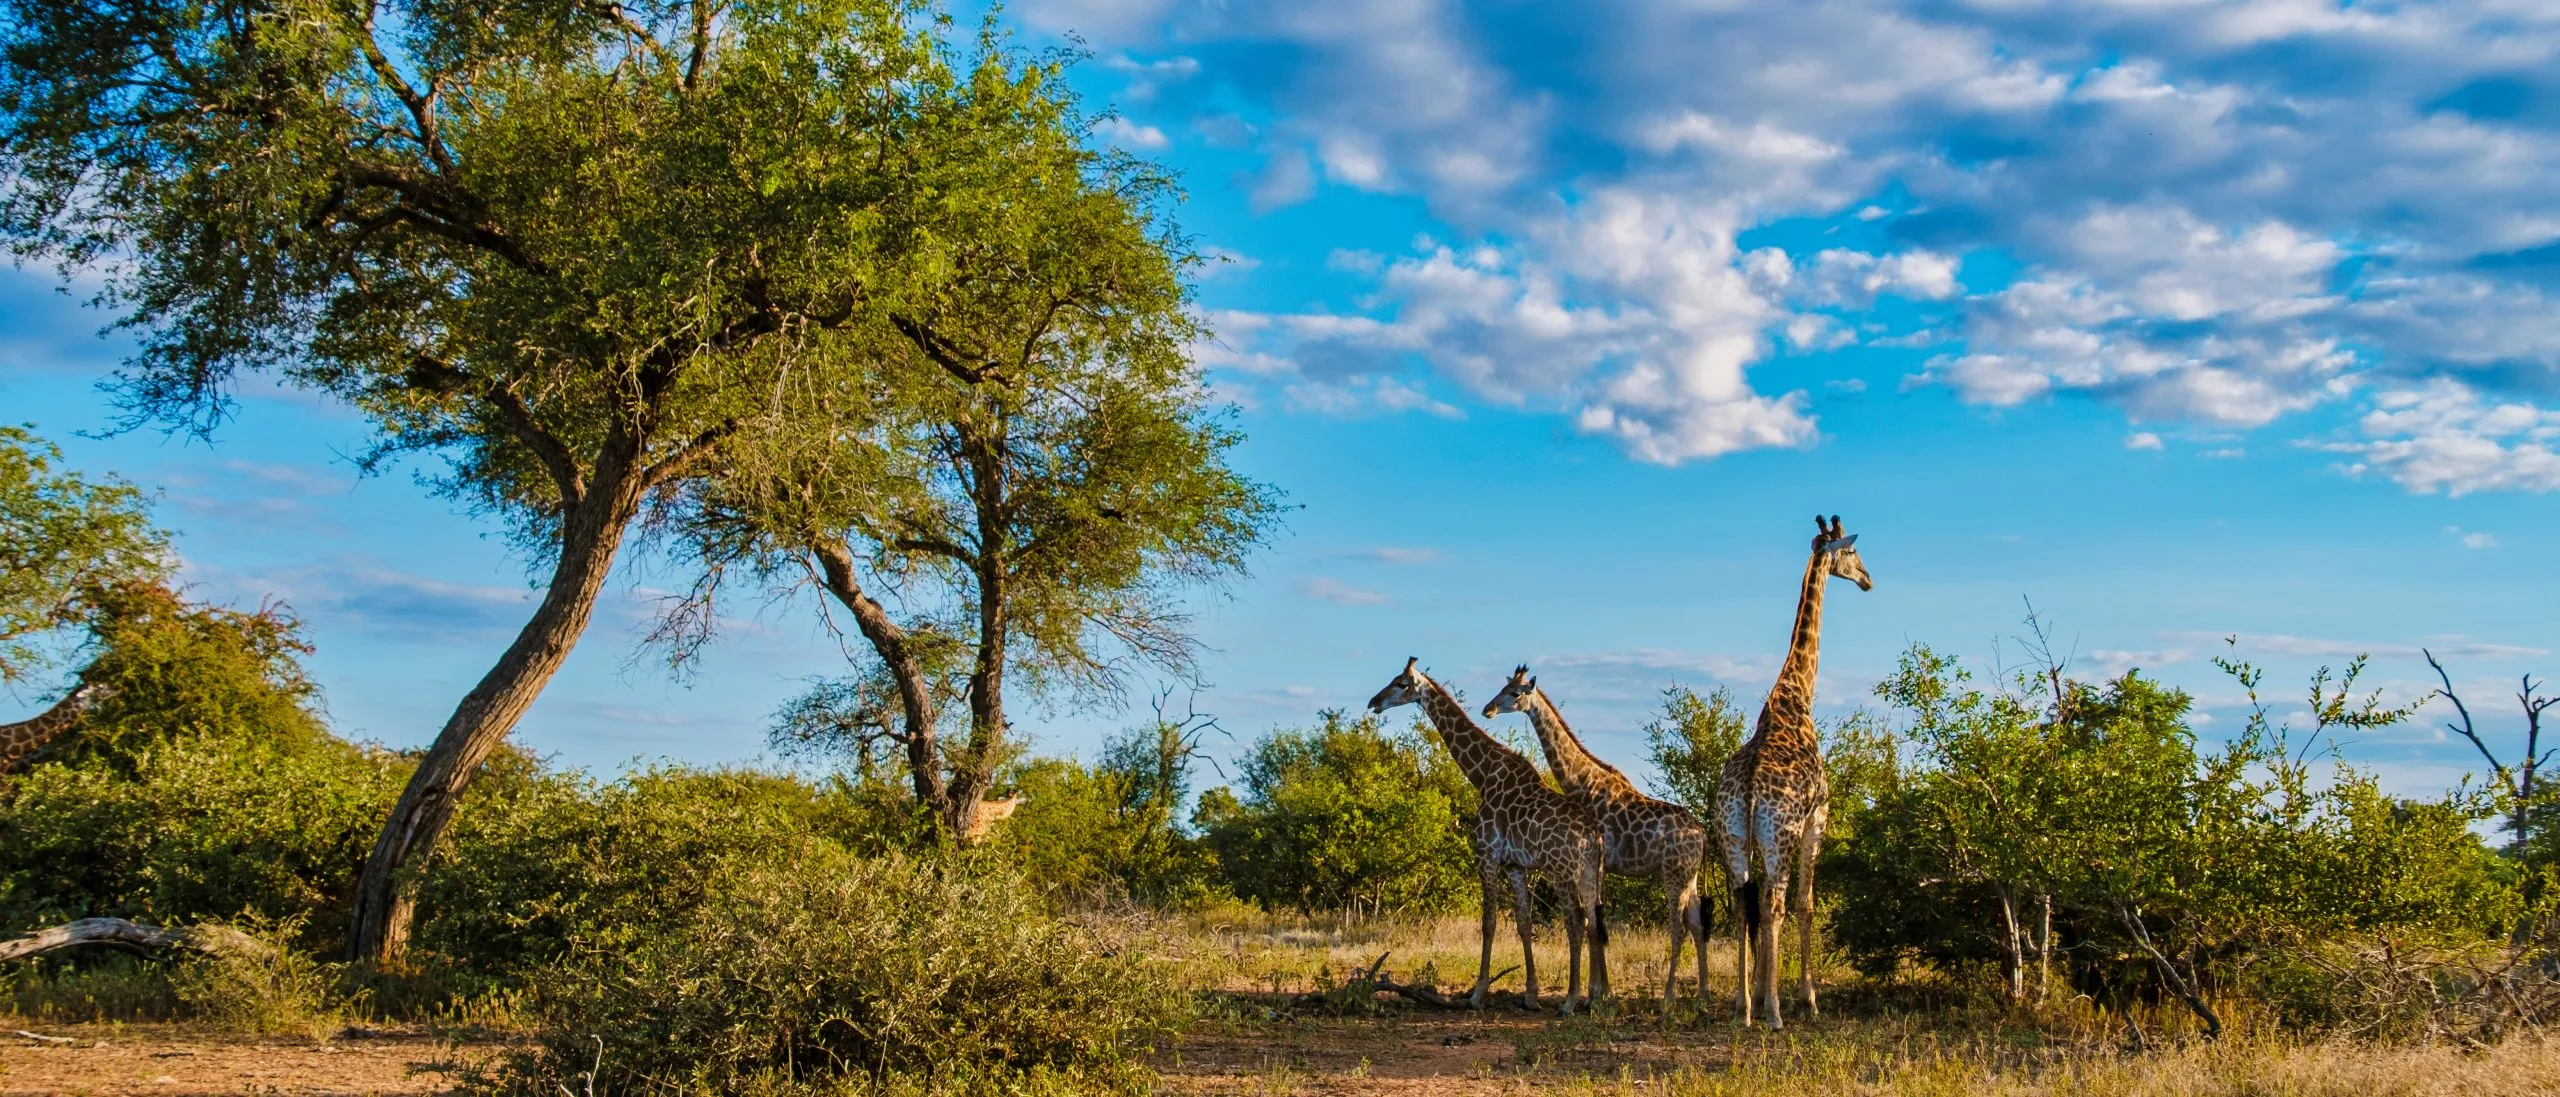 Giraf i bushen i Kruger nationalpark i Sydafrika. Giraf ved daggry i Kruger park Sydafrika